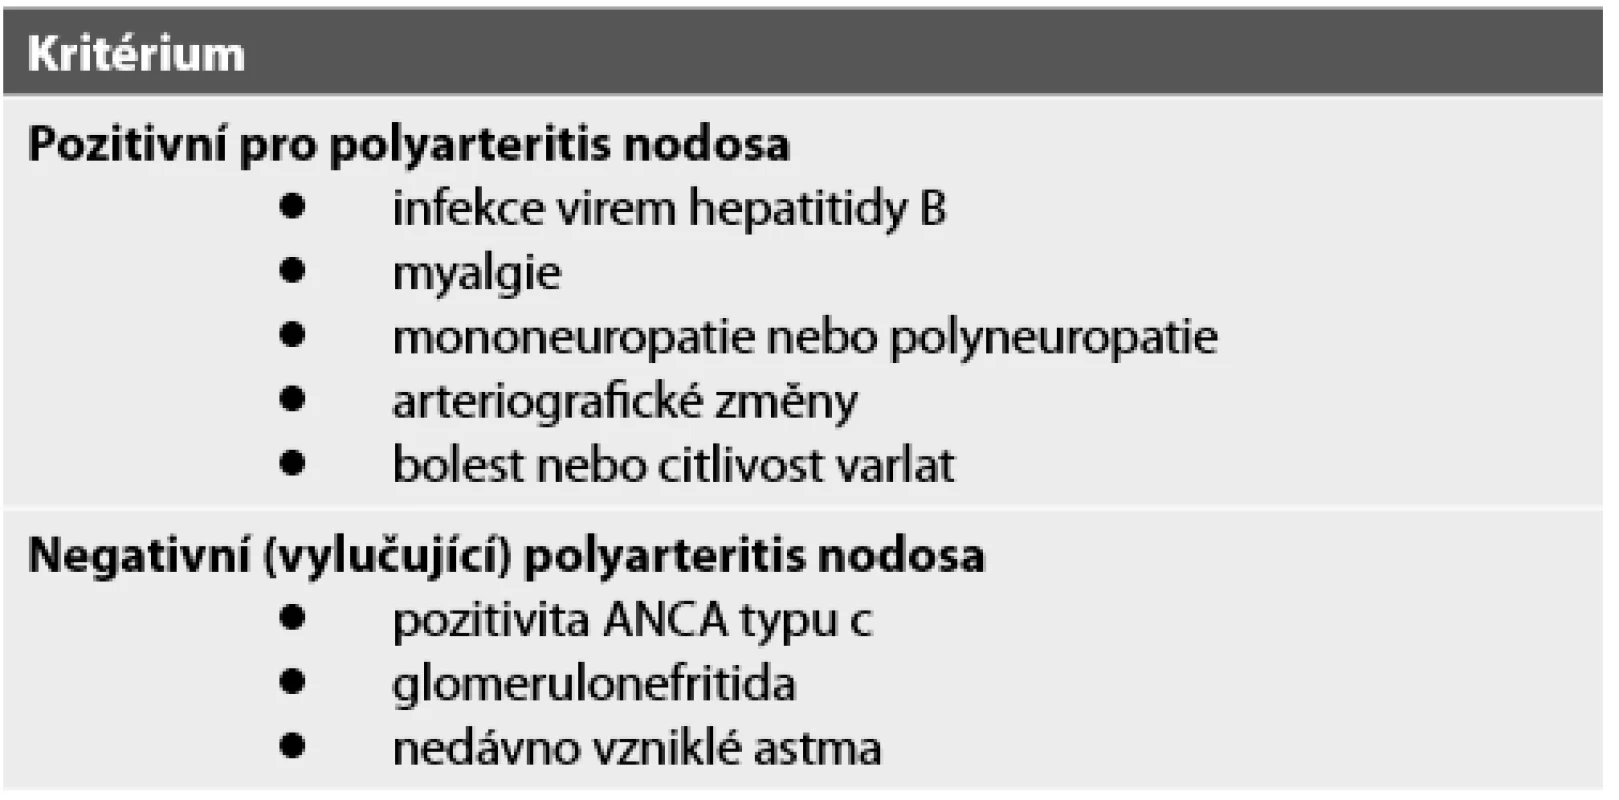 Navržená diagnostická kritéria pro polyarteritis nodosa (upraveno dle Henegara a spol., 2008).